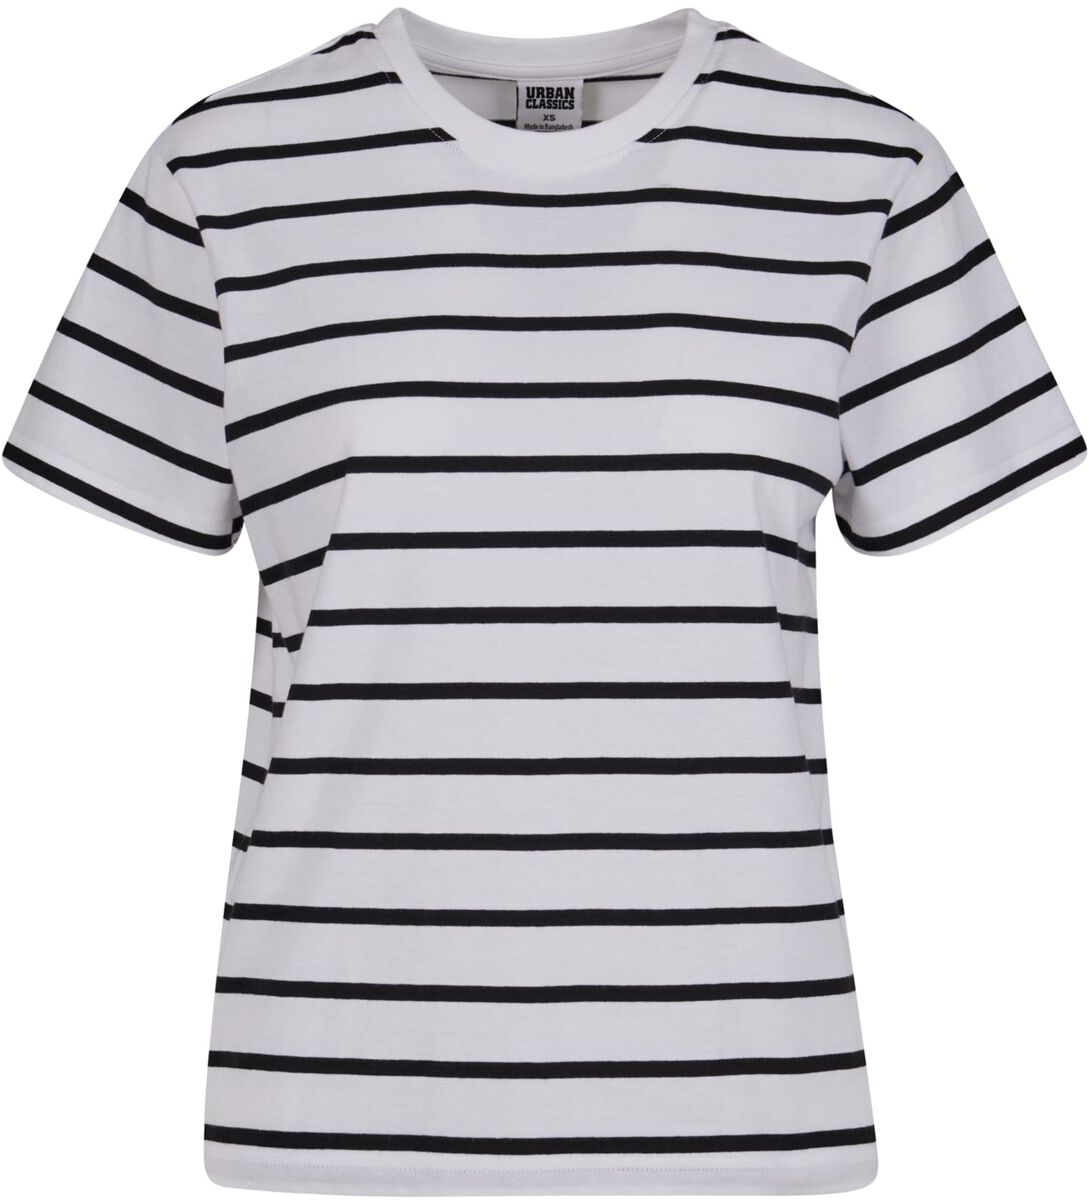 Urban Classics T-Shirt - Ladies Striped Boxy Tee - XS bis 3XL - für Damen - Größe S - schwarz/weiß